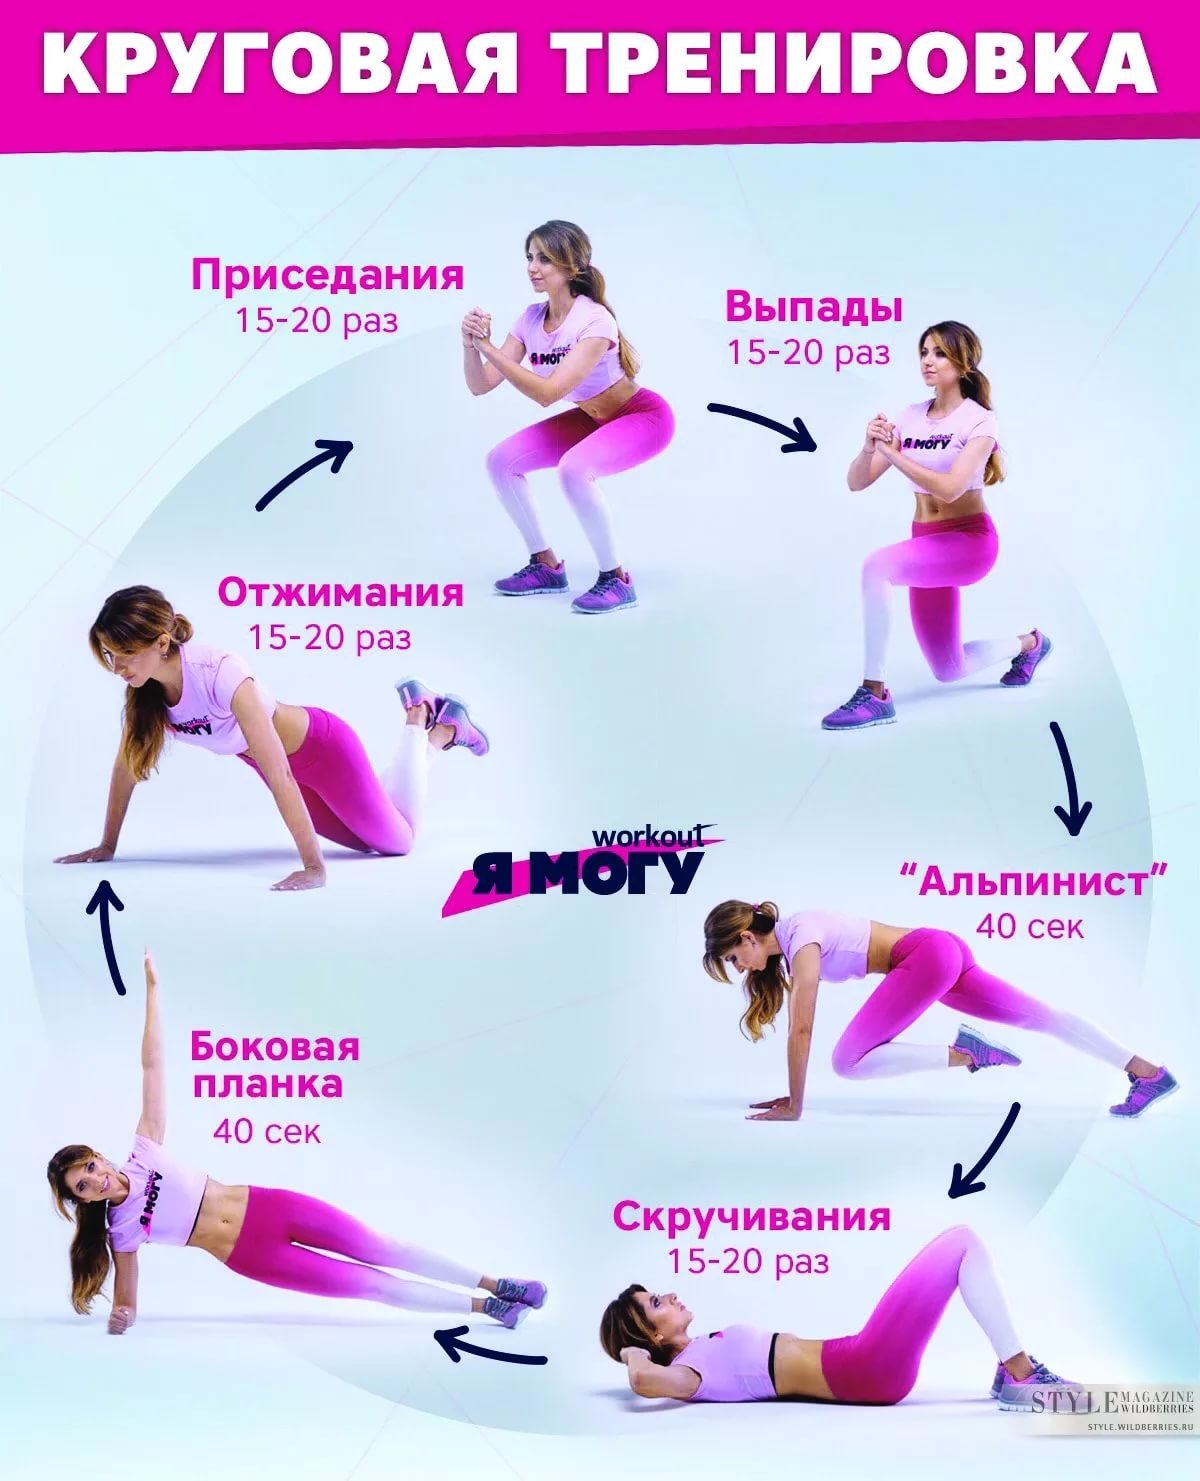 Программа похудения в тренажерном зале для девушек - упражнения для начинающих и план занятий